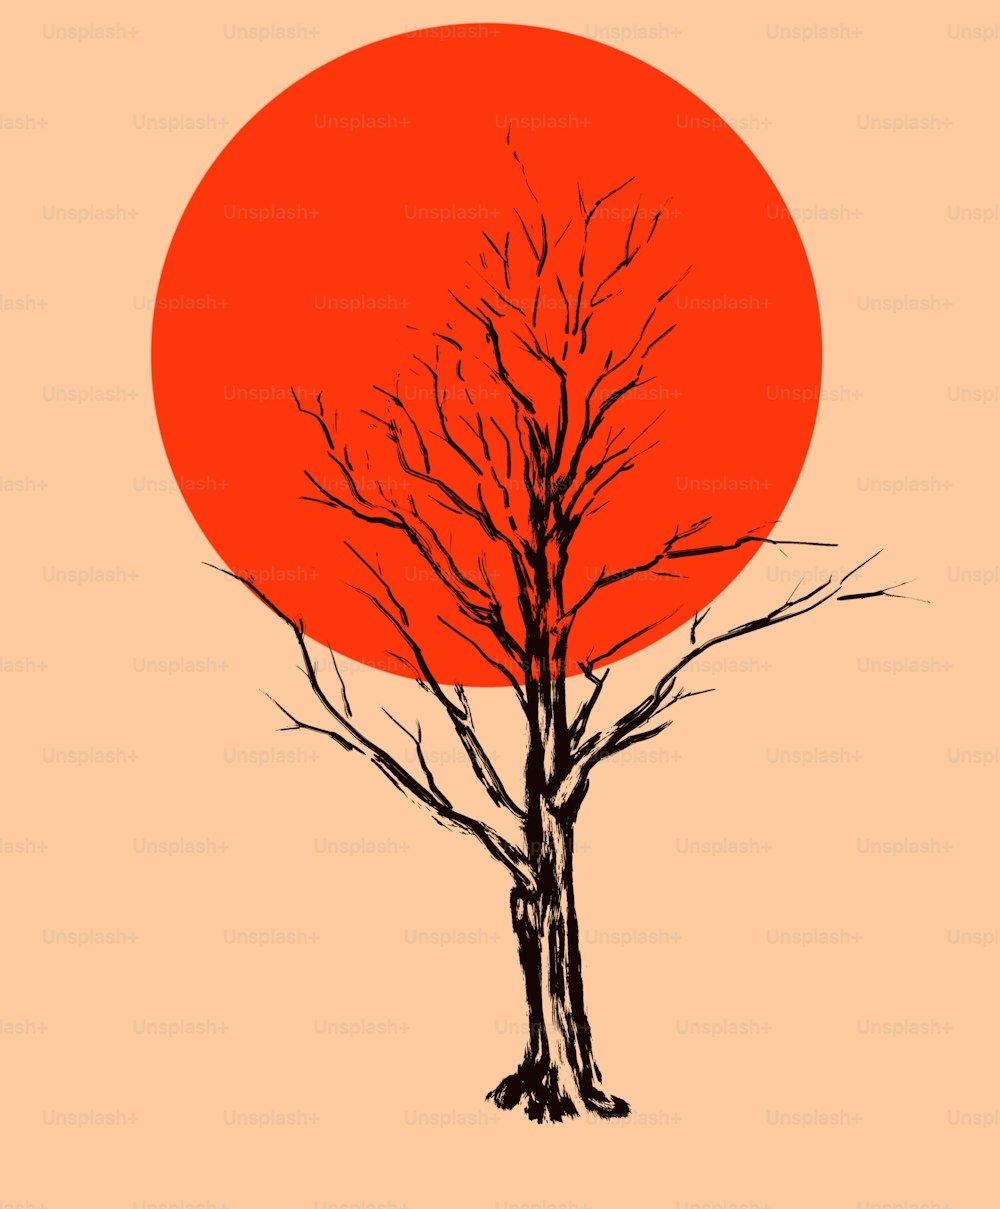 Un árbol seco sobre el fondo de un disco solar al rojo vivo. Formato vertical